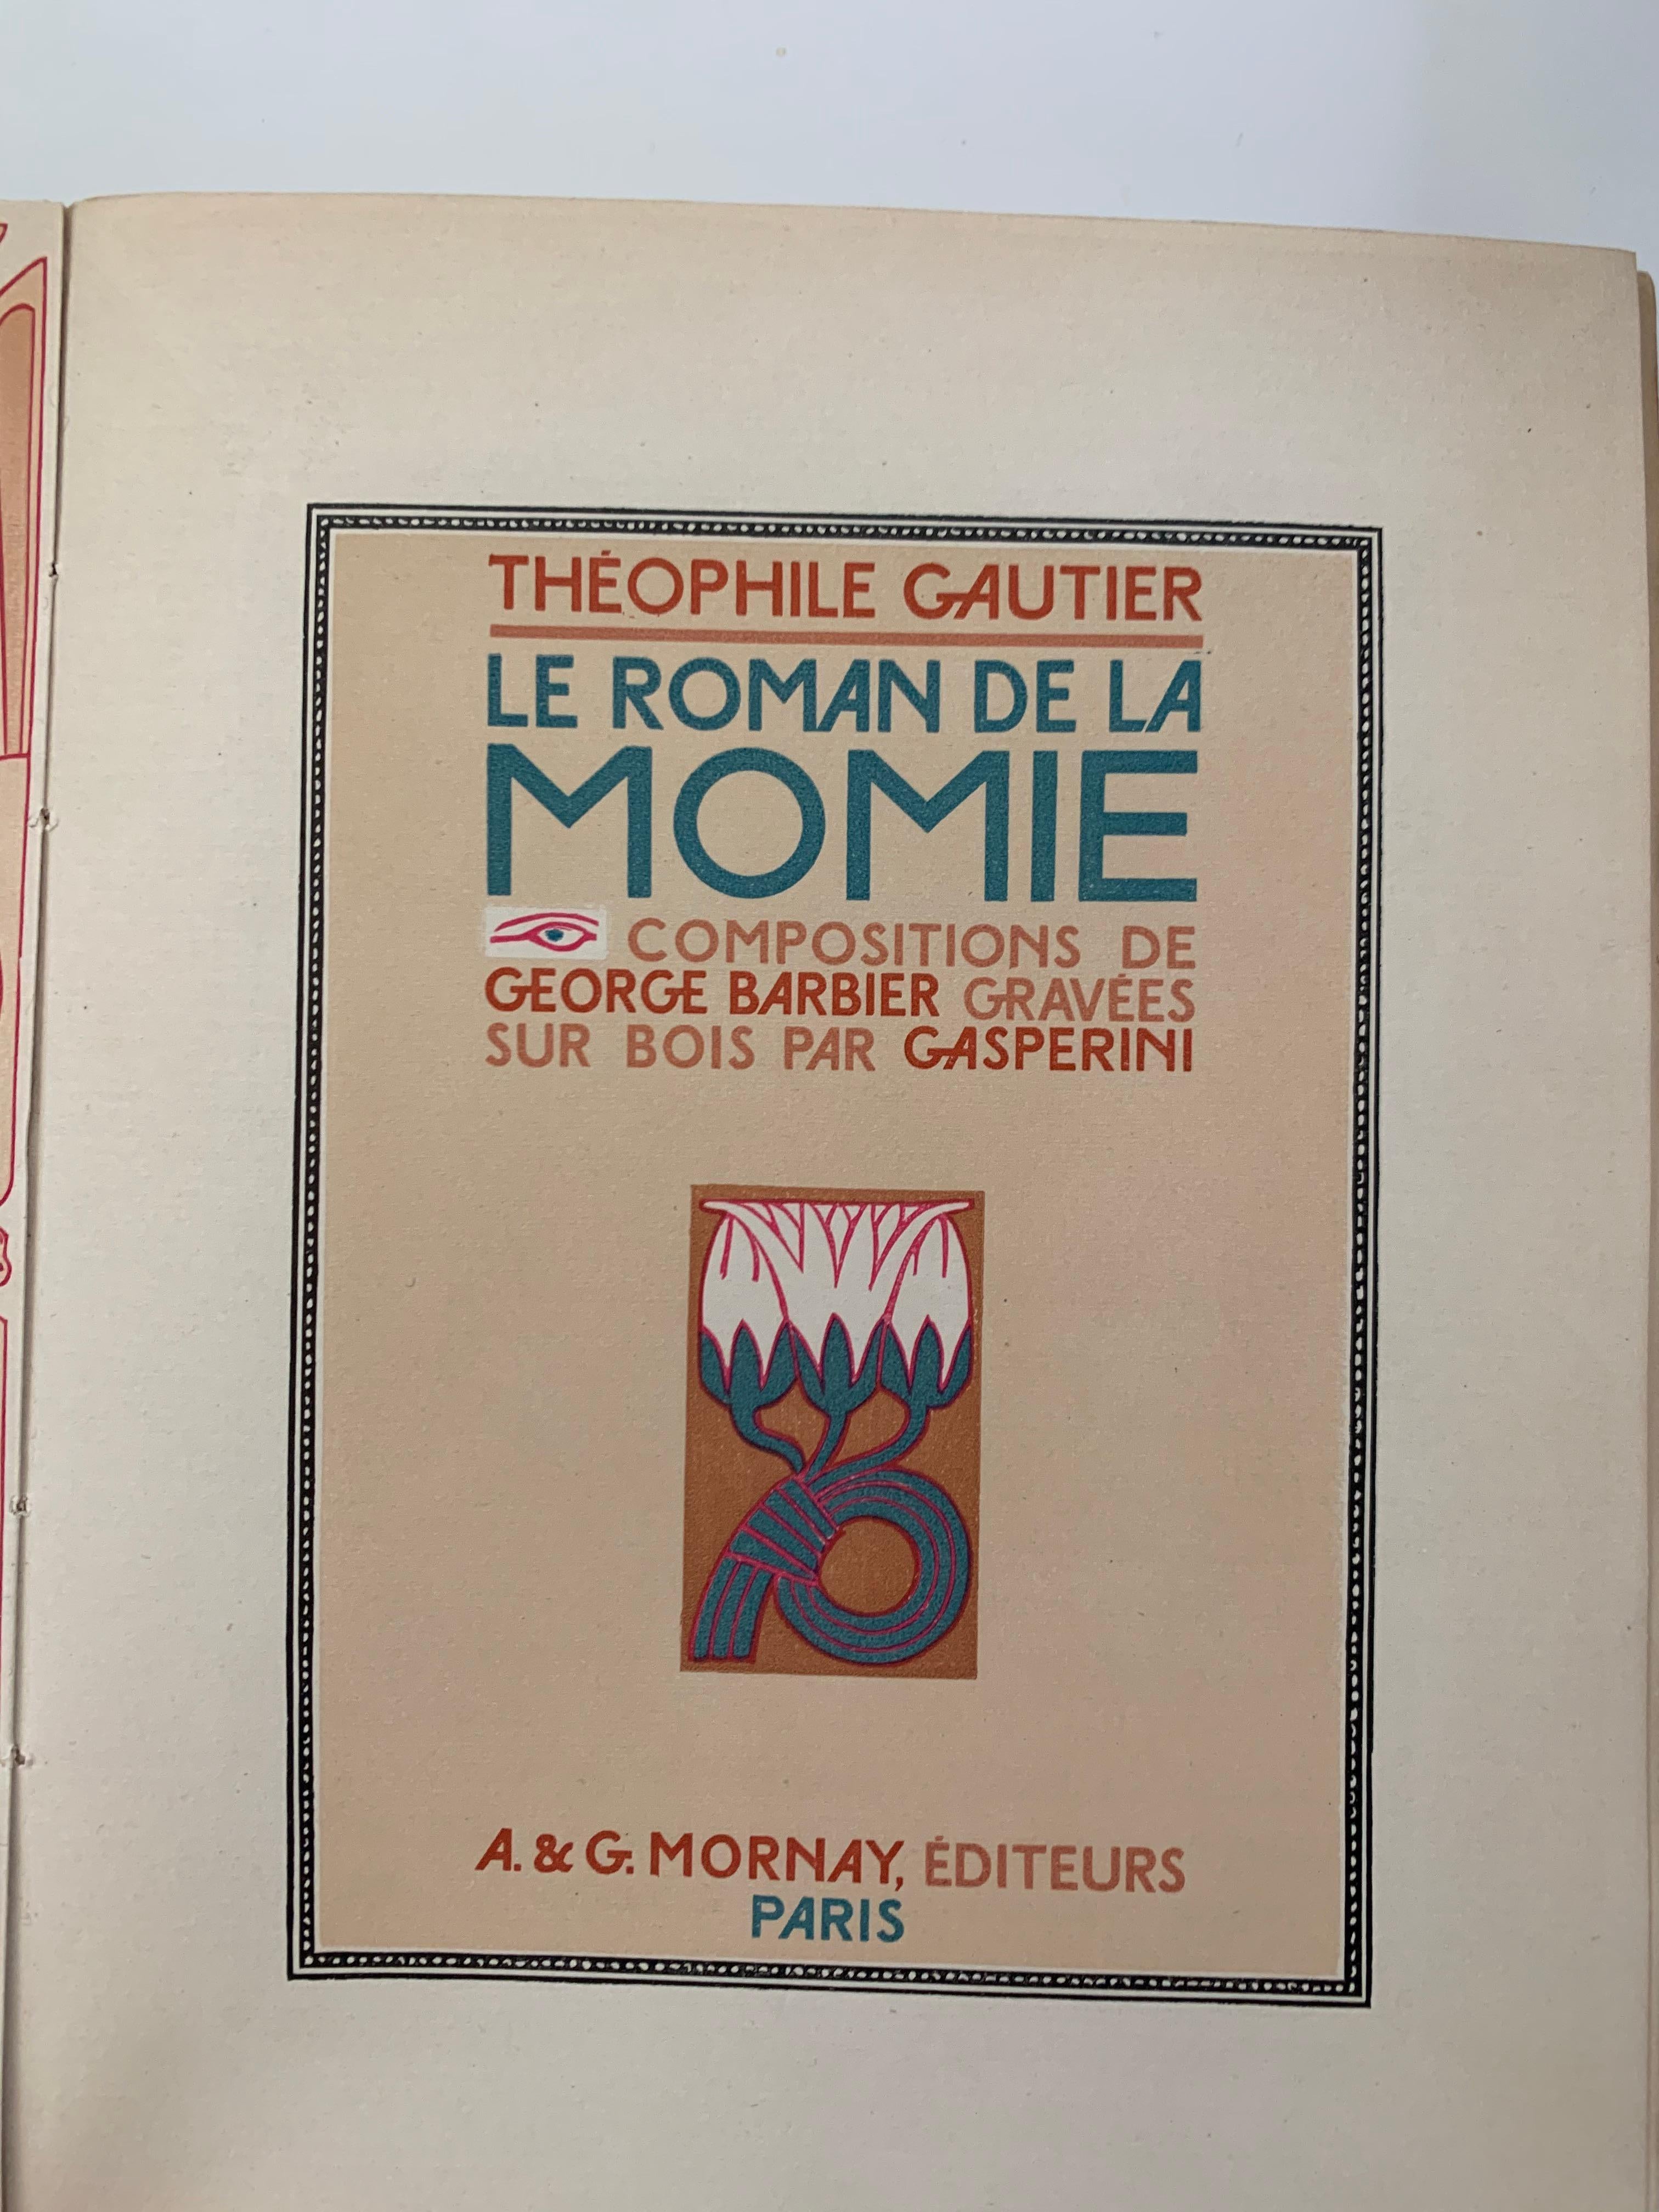 Le Roman de la Momie - Art Deco Print by George Barbier